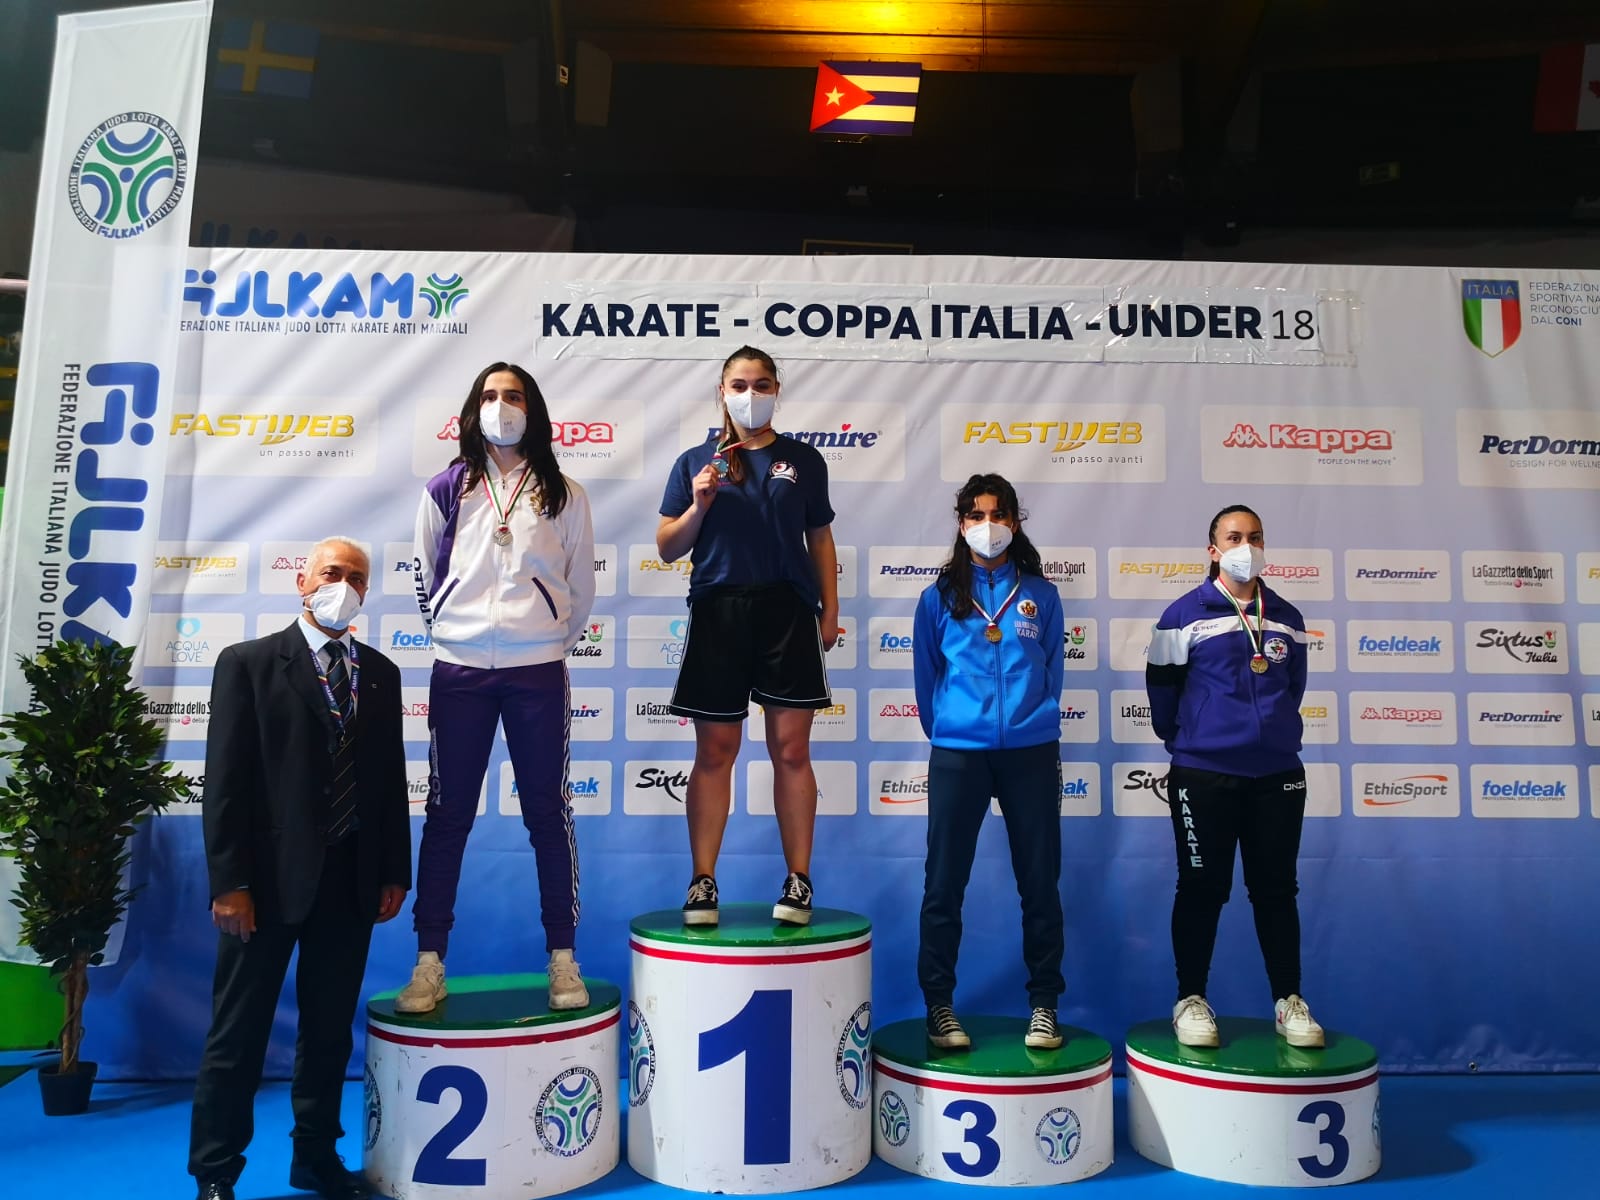 La casentinese Elisa Liguri si conferma medaglia d’oro nella Coppa Italia di Karate  